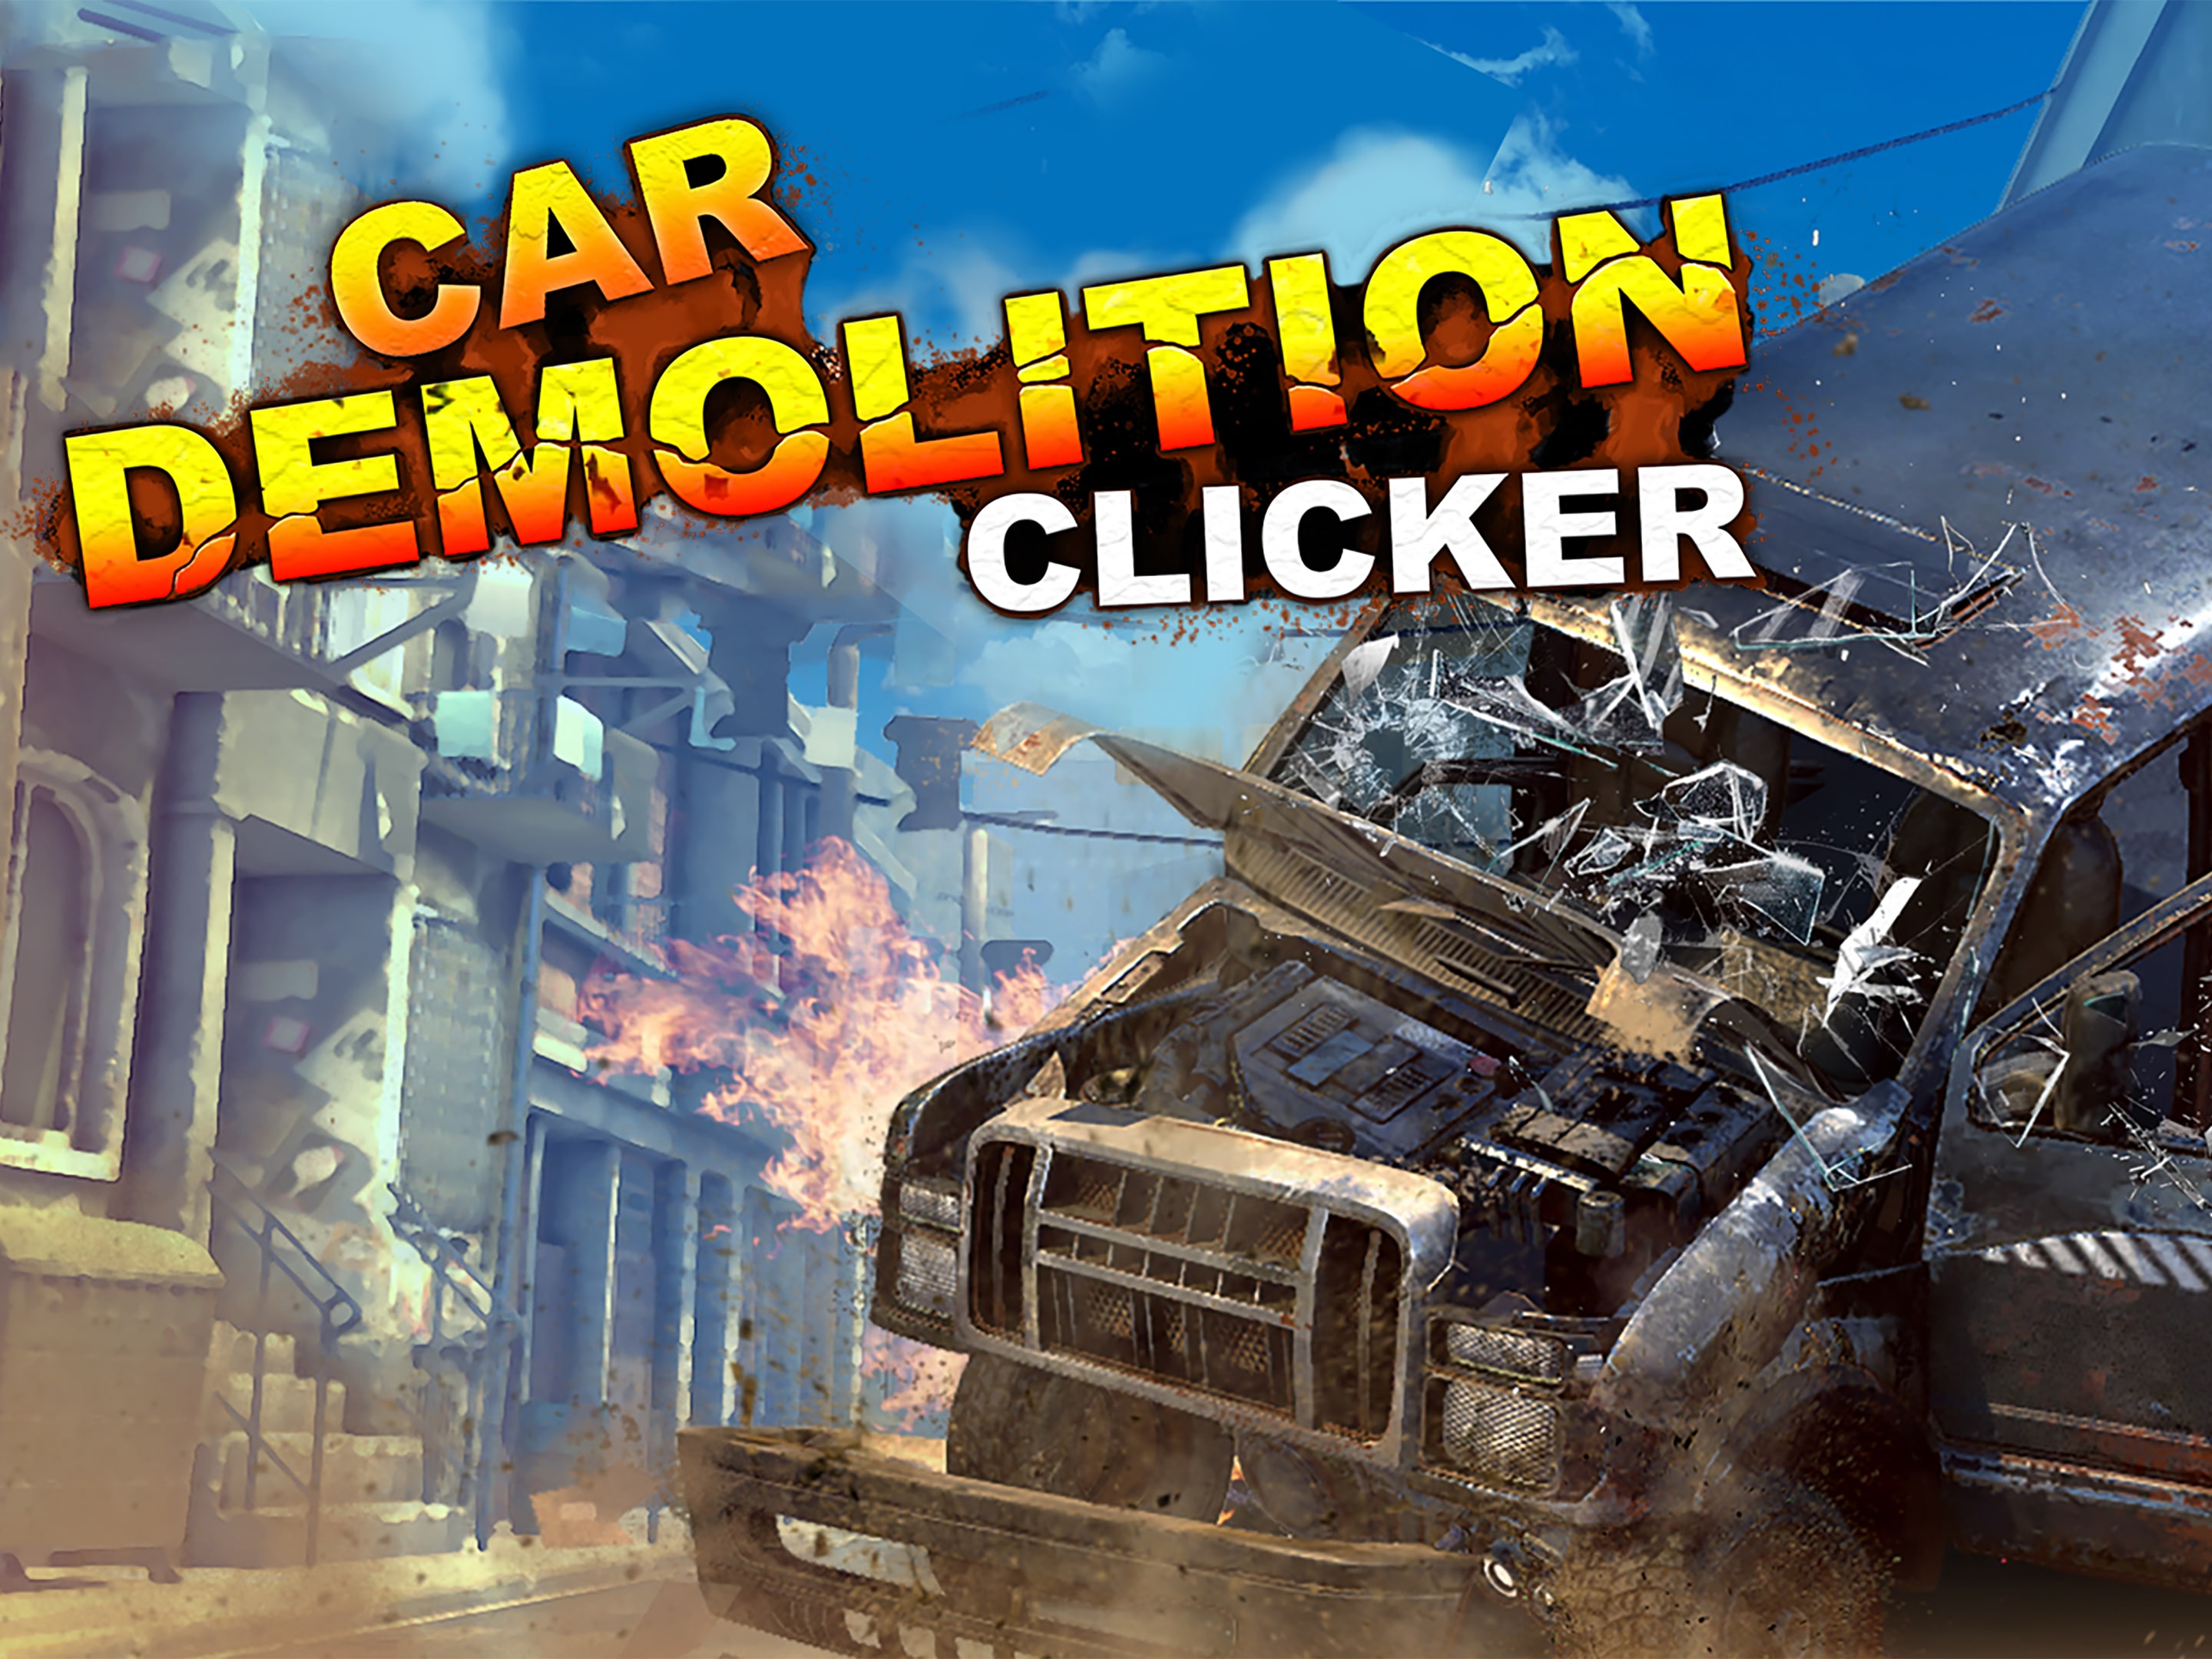 Car Demolition Clicker  Aplicações de download da Nintendo Switch